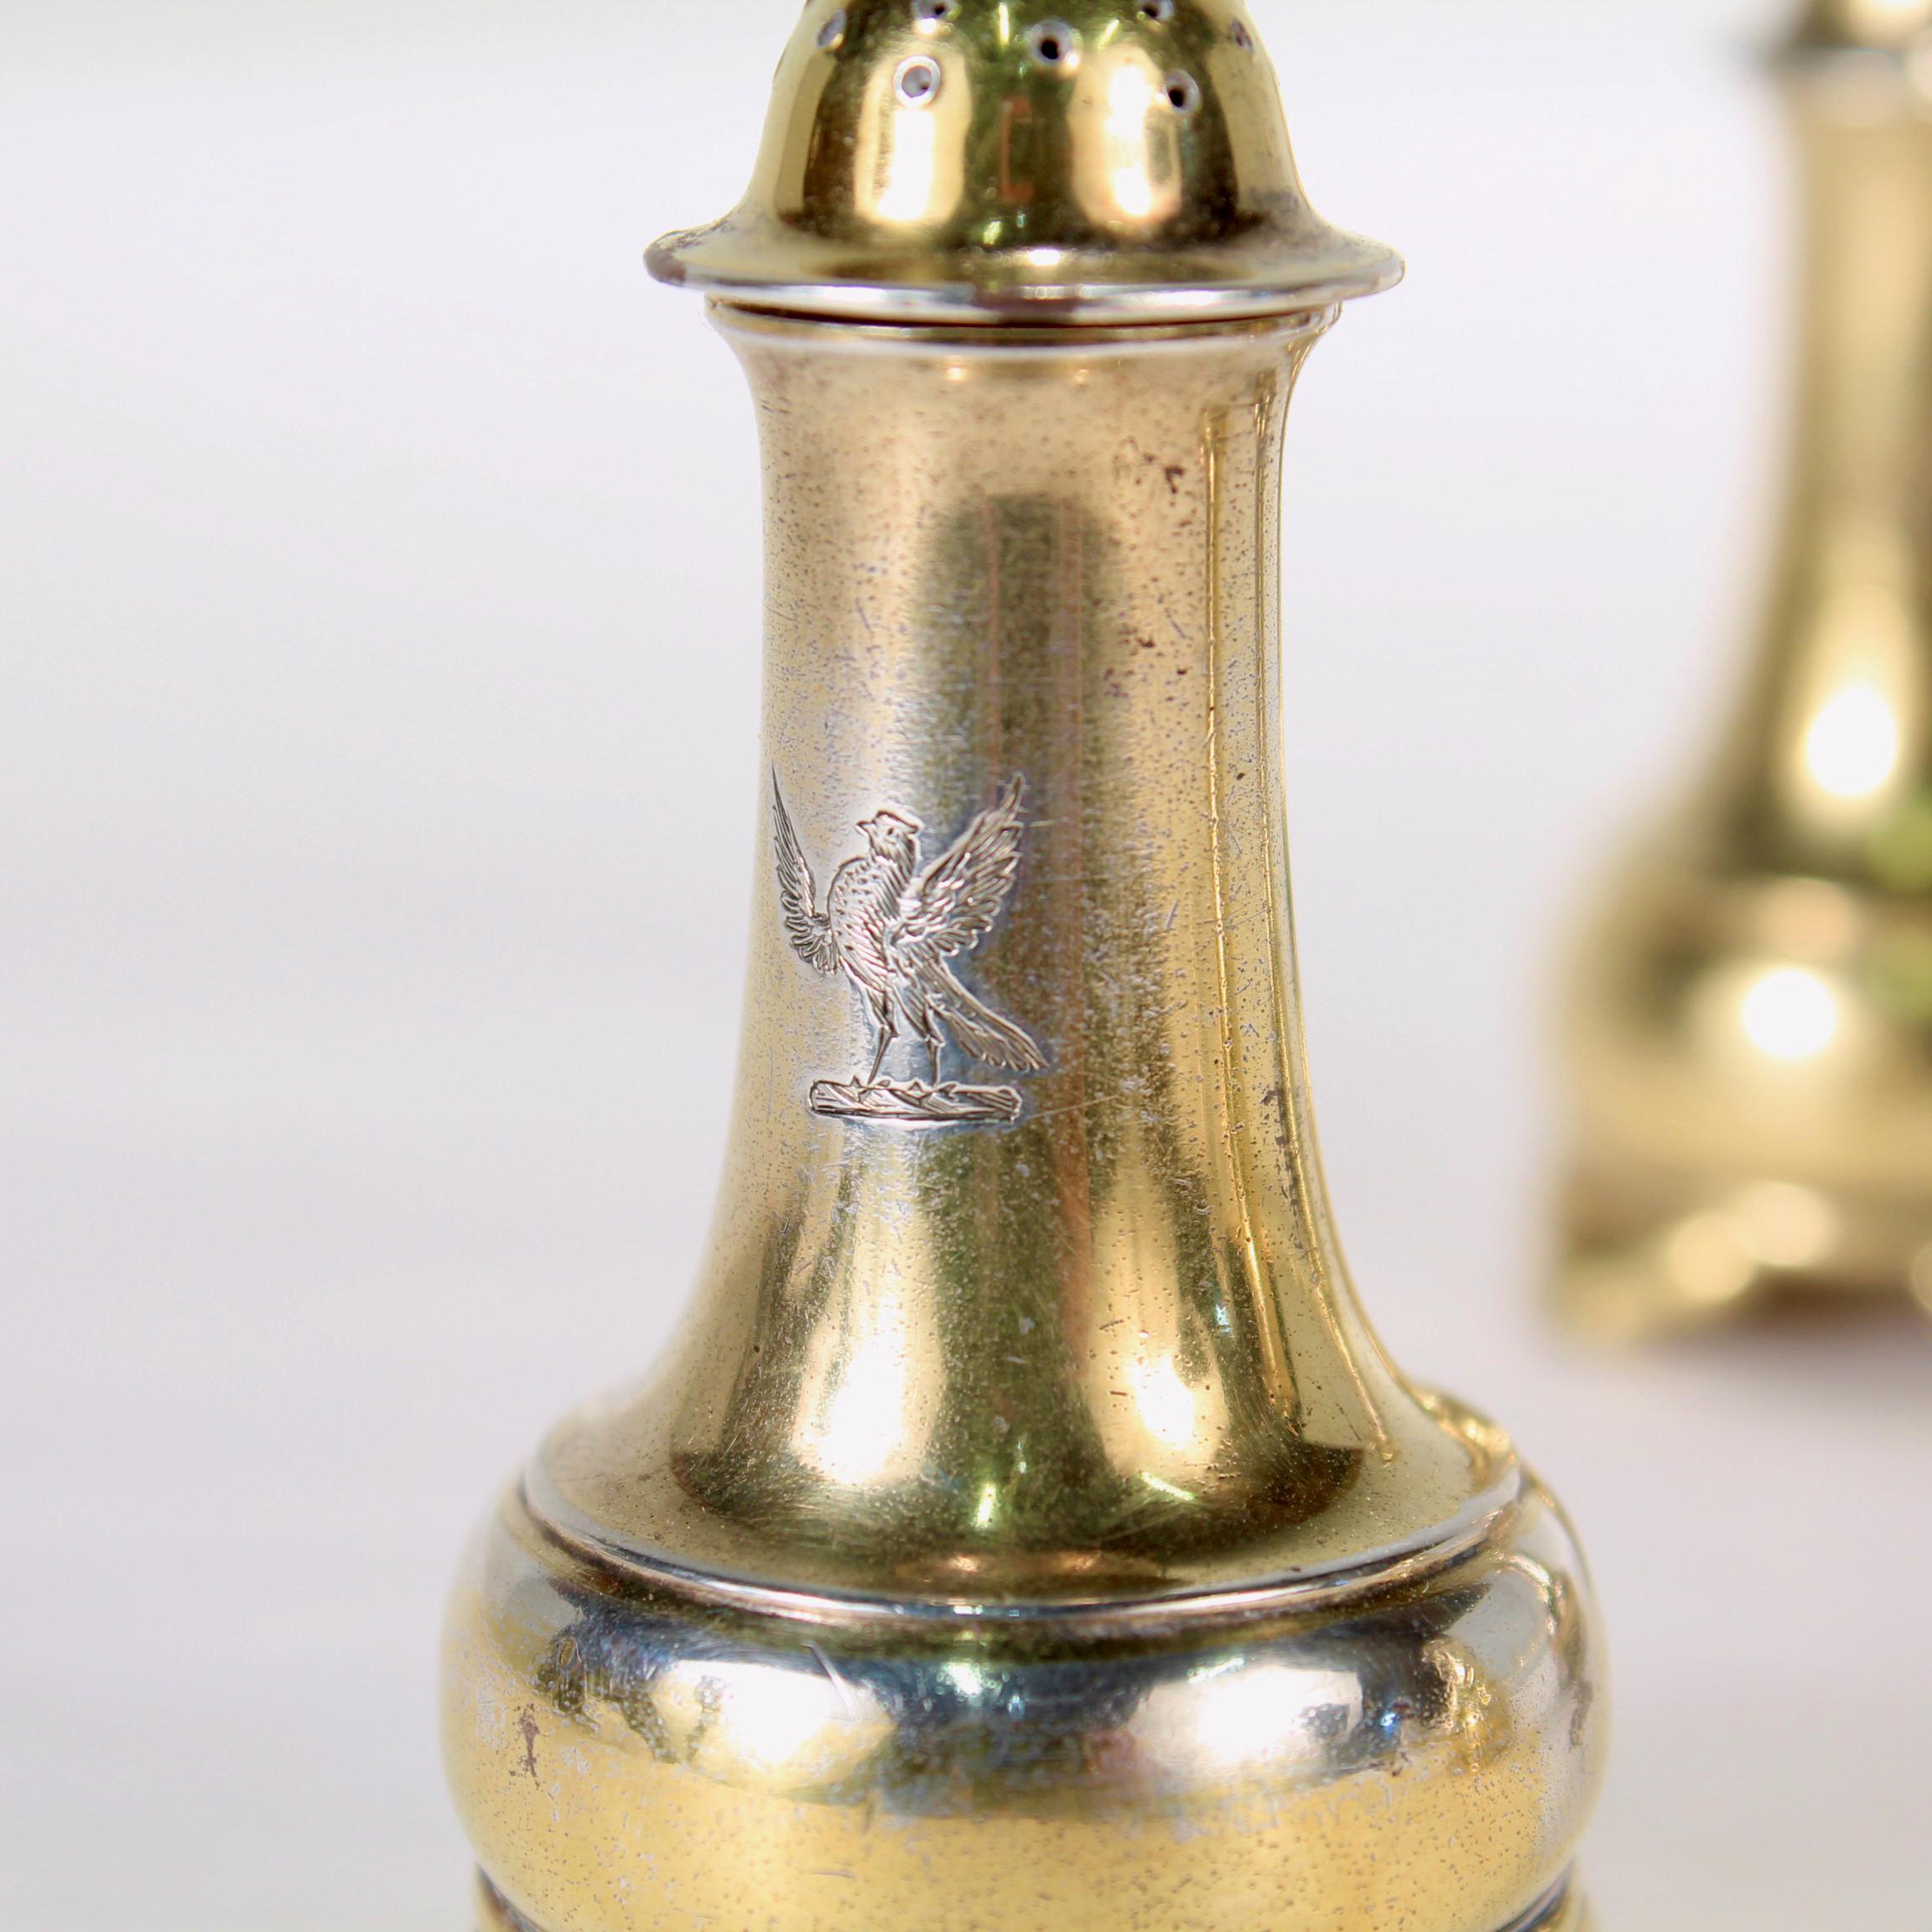 Ein sehr schöner Satz von 4 antiken vergoldeten Salz- und Pfefferstreuern aus Sterlingsilber.

Von Tiffany & Co. 

Jeder Streuer ist in der Mitte mit einem Wappen eines großen Vogels (der ein Falke oder Raubvogel zu sein scheint) graviert.

Einfach